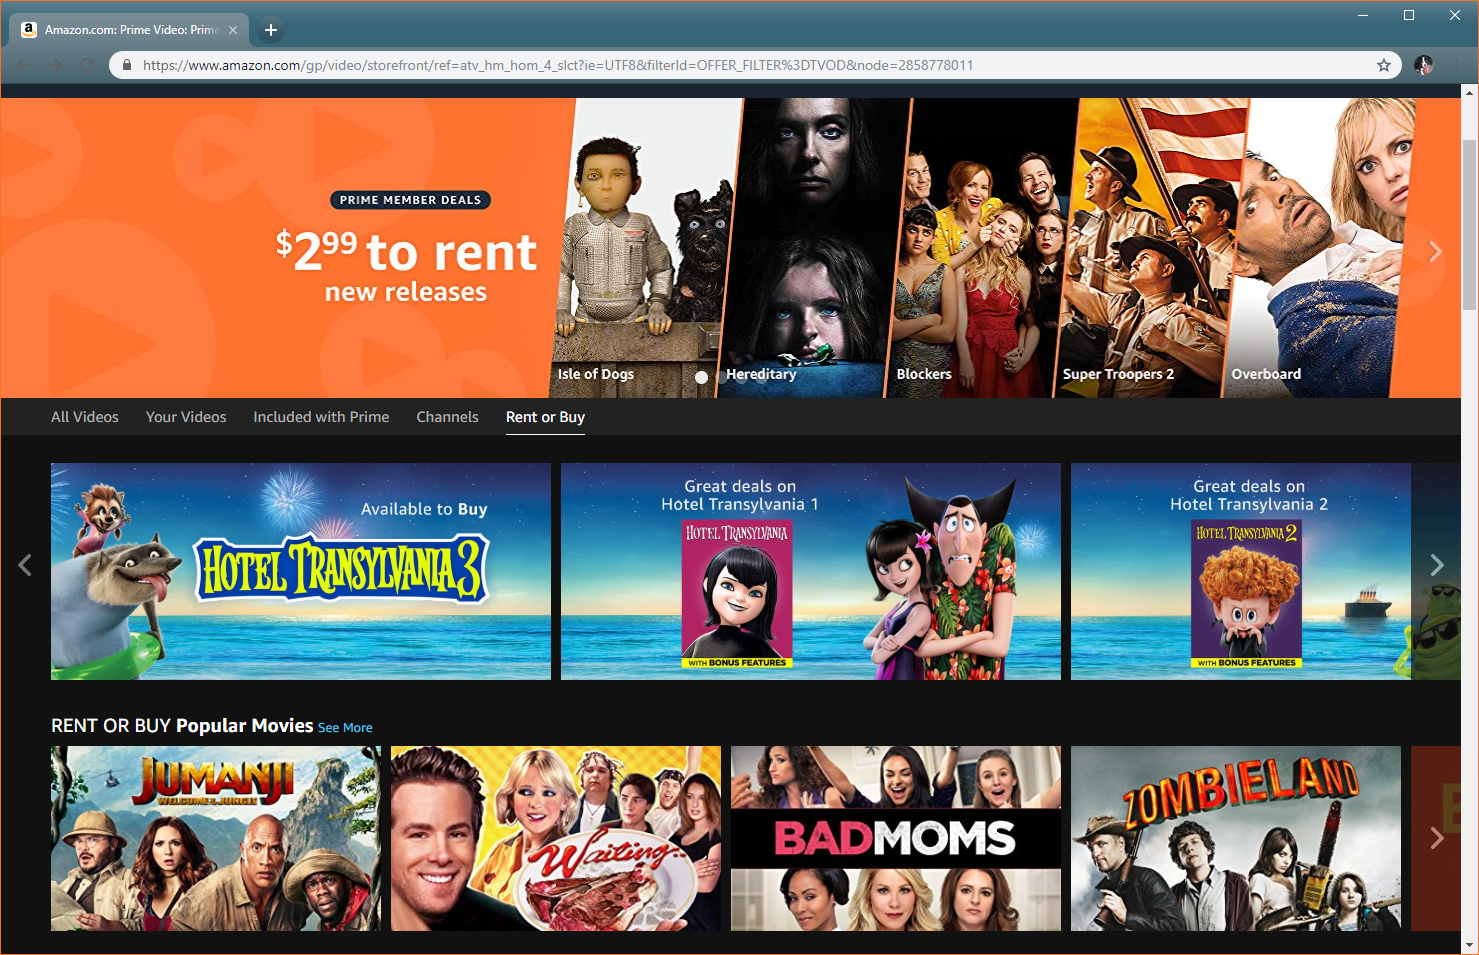 Скриншот Amazon Video, показывающий фильмы для проката или покупки.